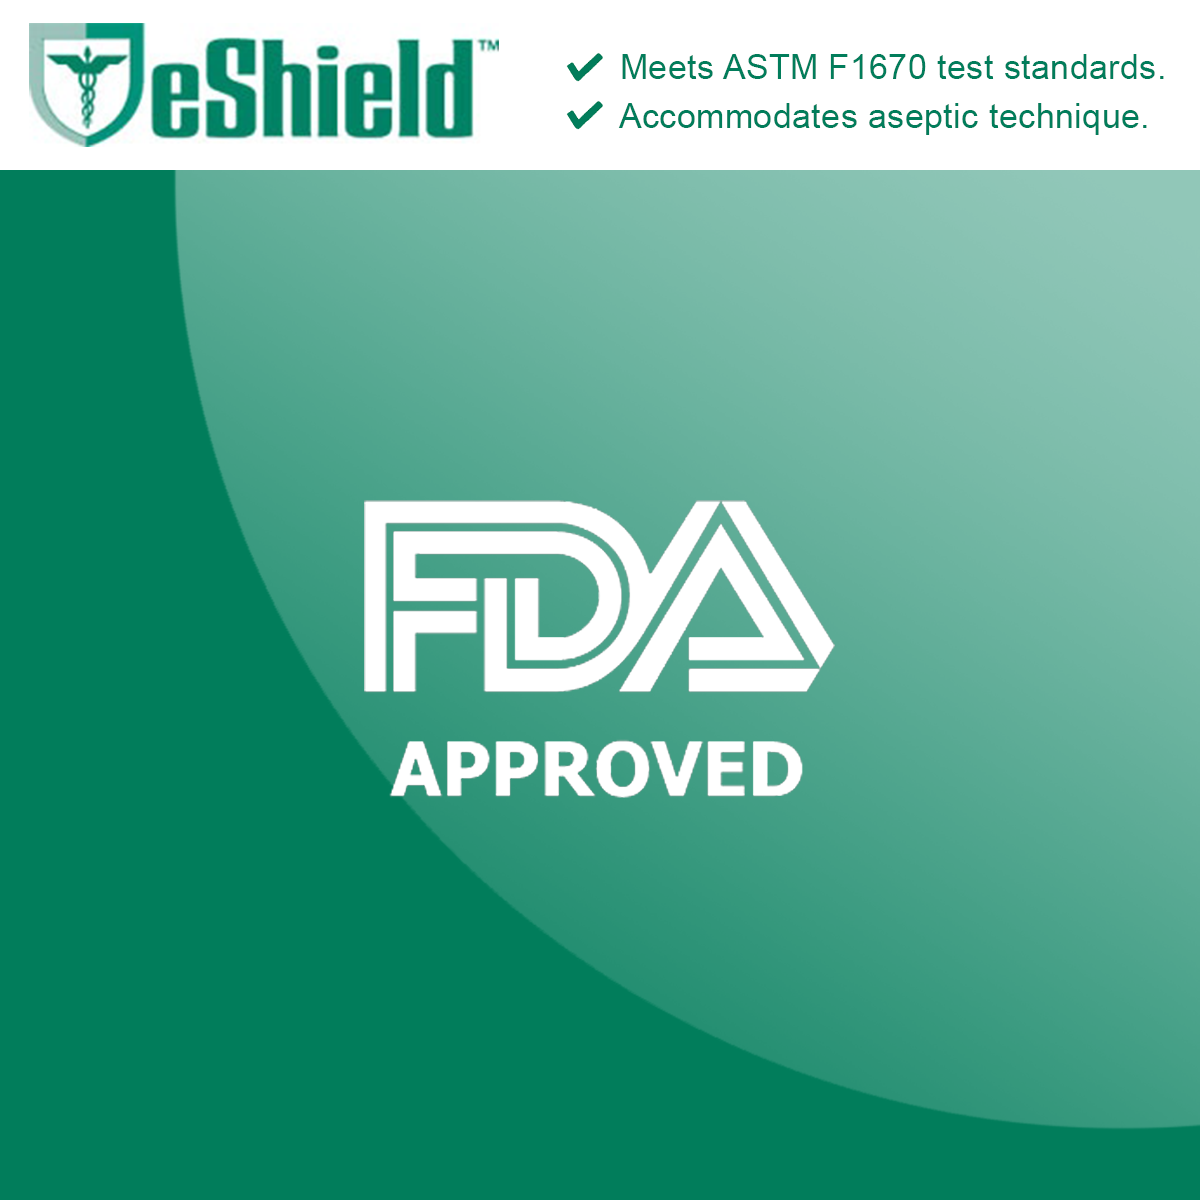 eShield-Sterile-FDA